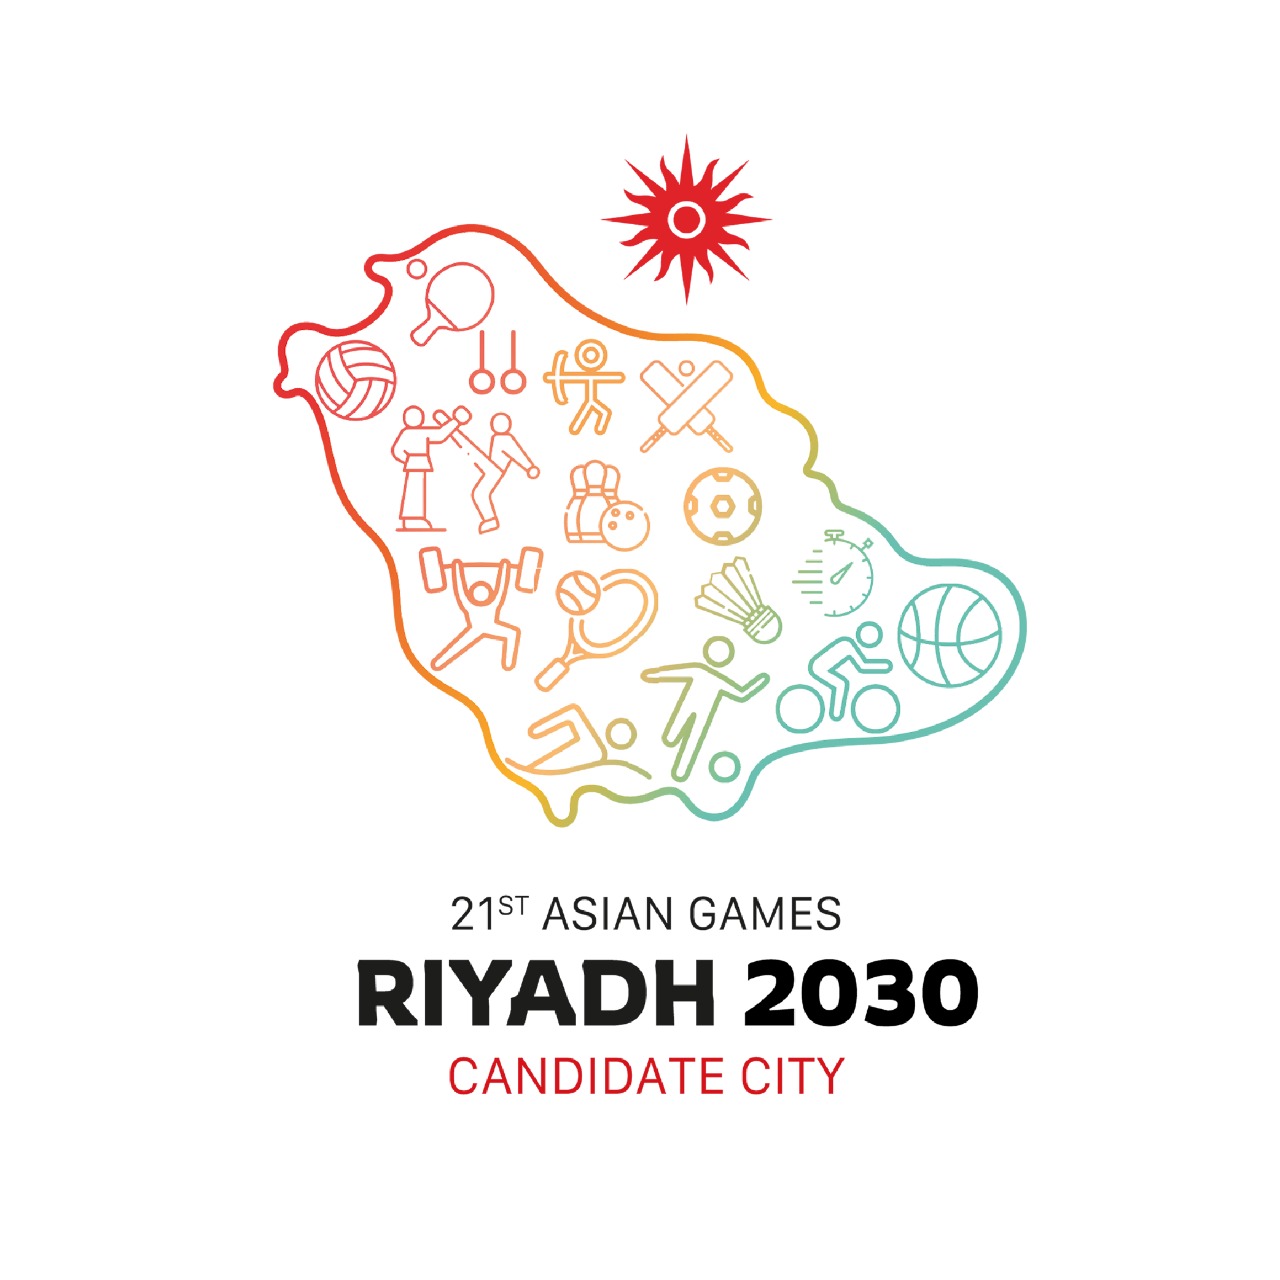 وزير الرياضة يدشن ملف ترشيح الرياض لإستضافة دورة الألعاب الآسيوية 2030 صحيفة الاقتصادية